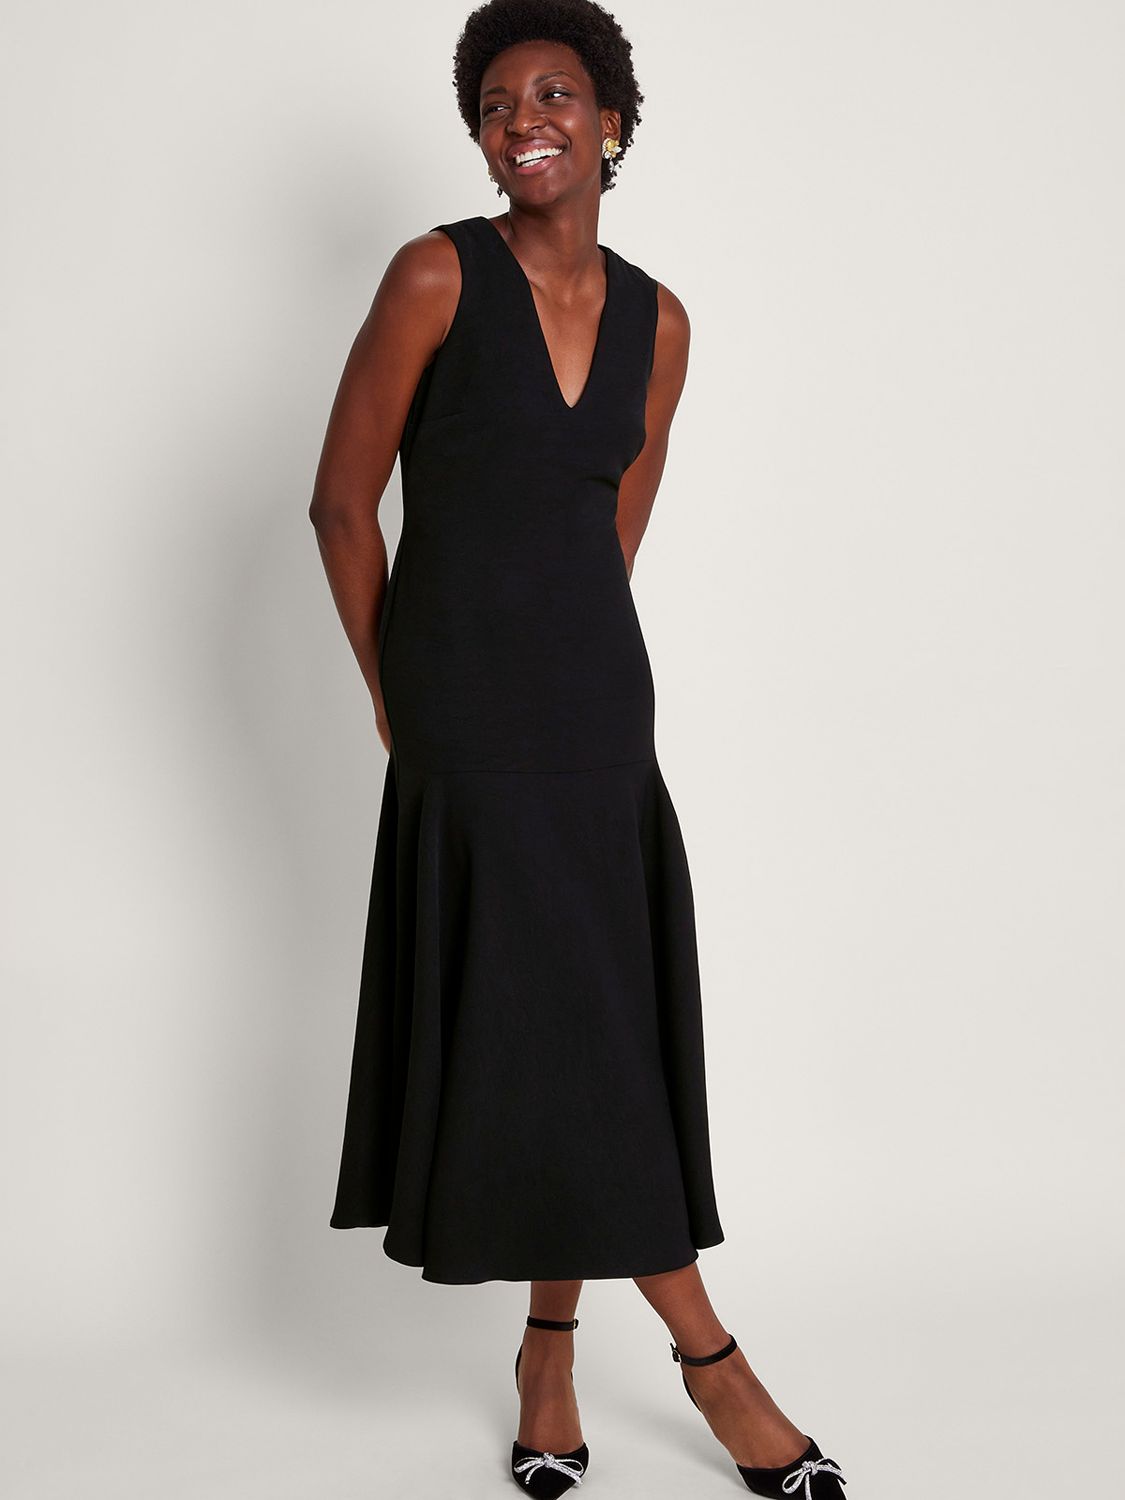 Buy Sleeveless Dresses For Women Online